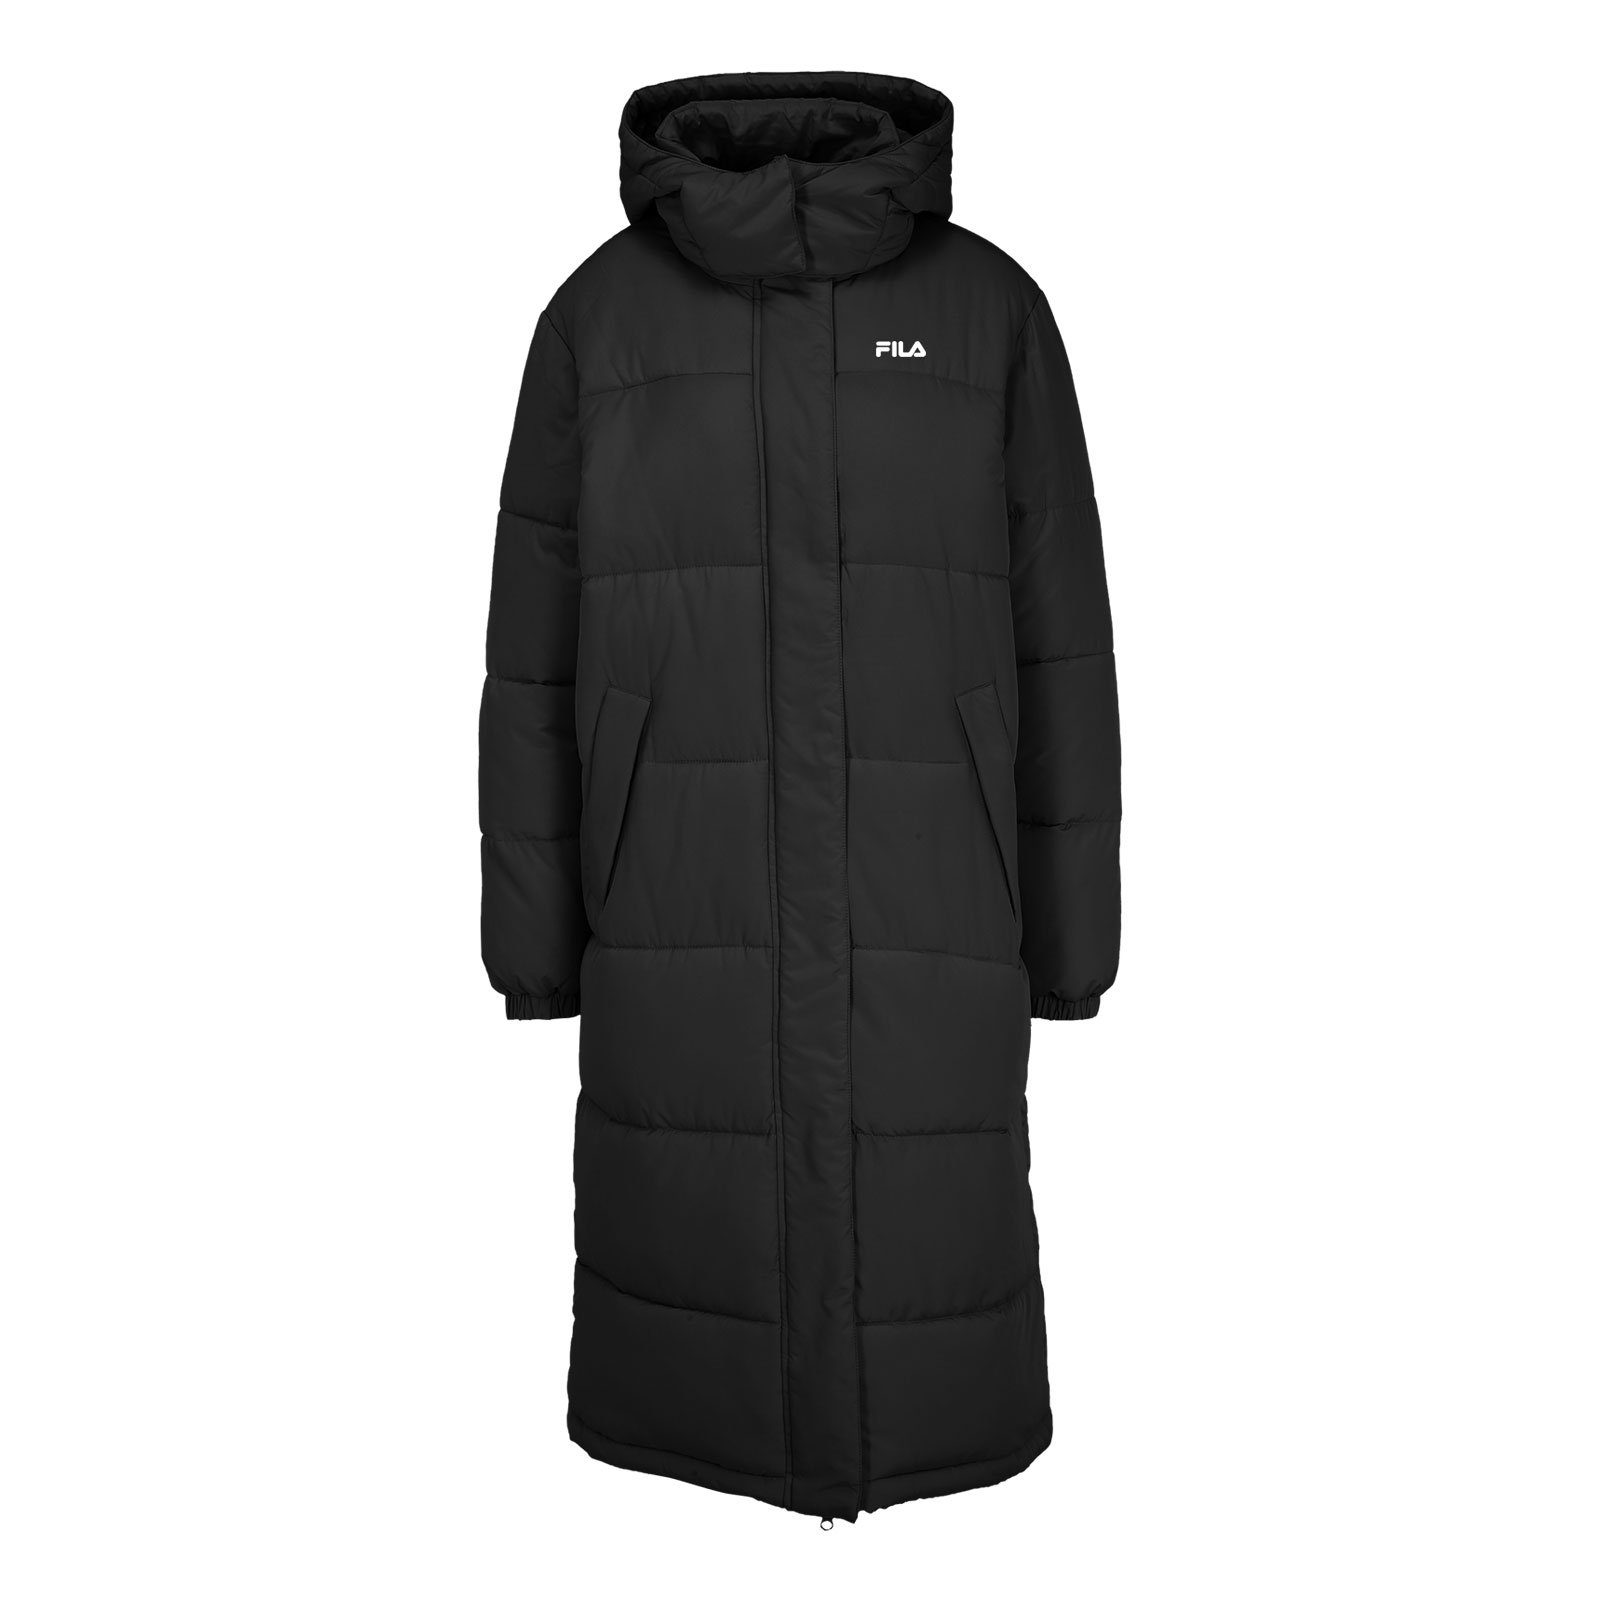 Fila Winterjacke Braunfels Long Puffer Jacket mit Markenlogo 80010 black